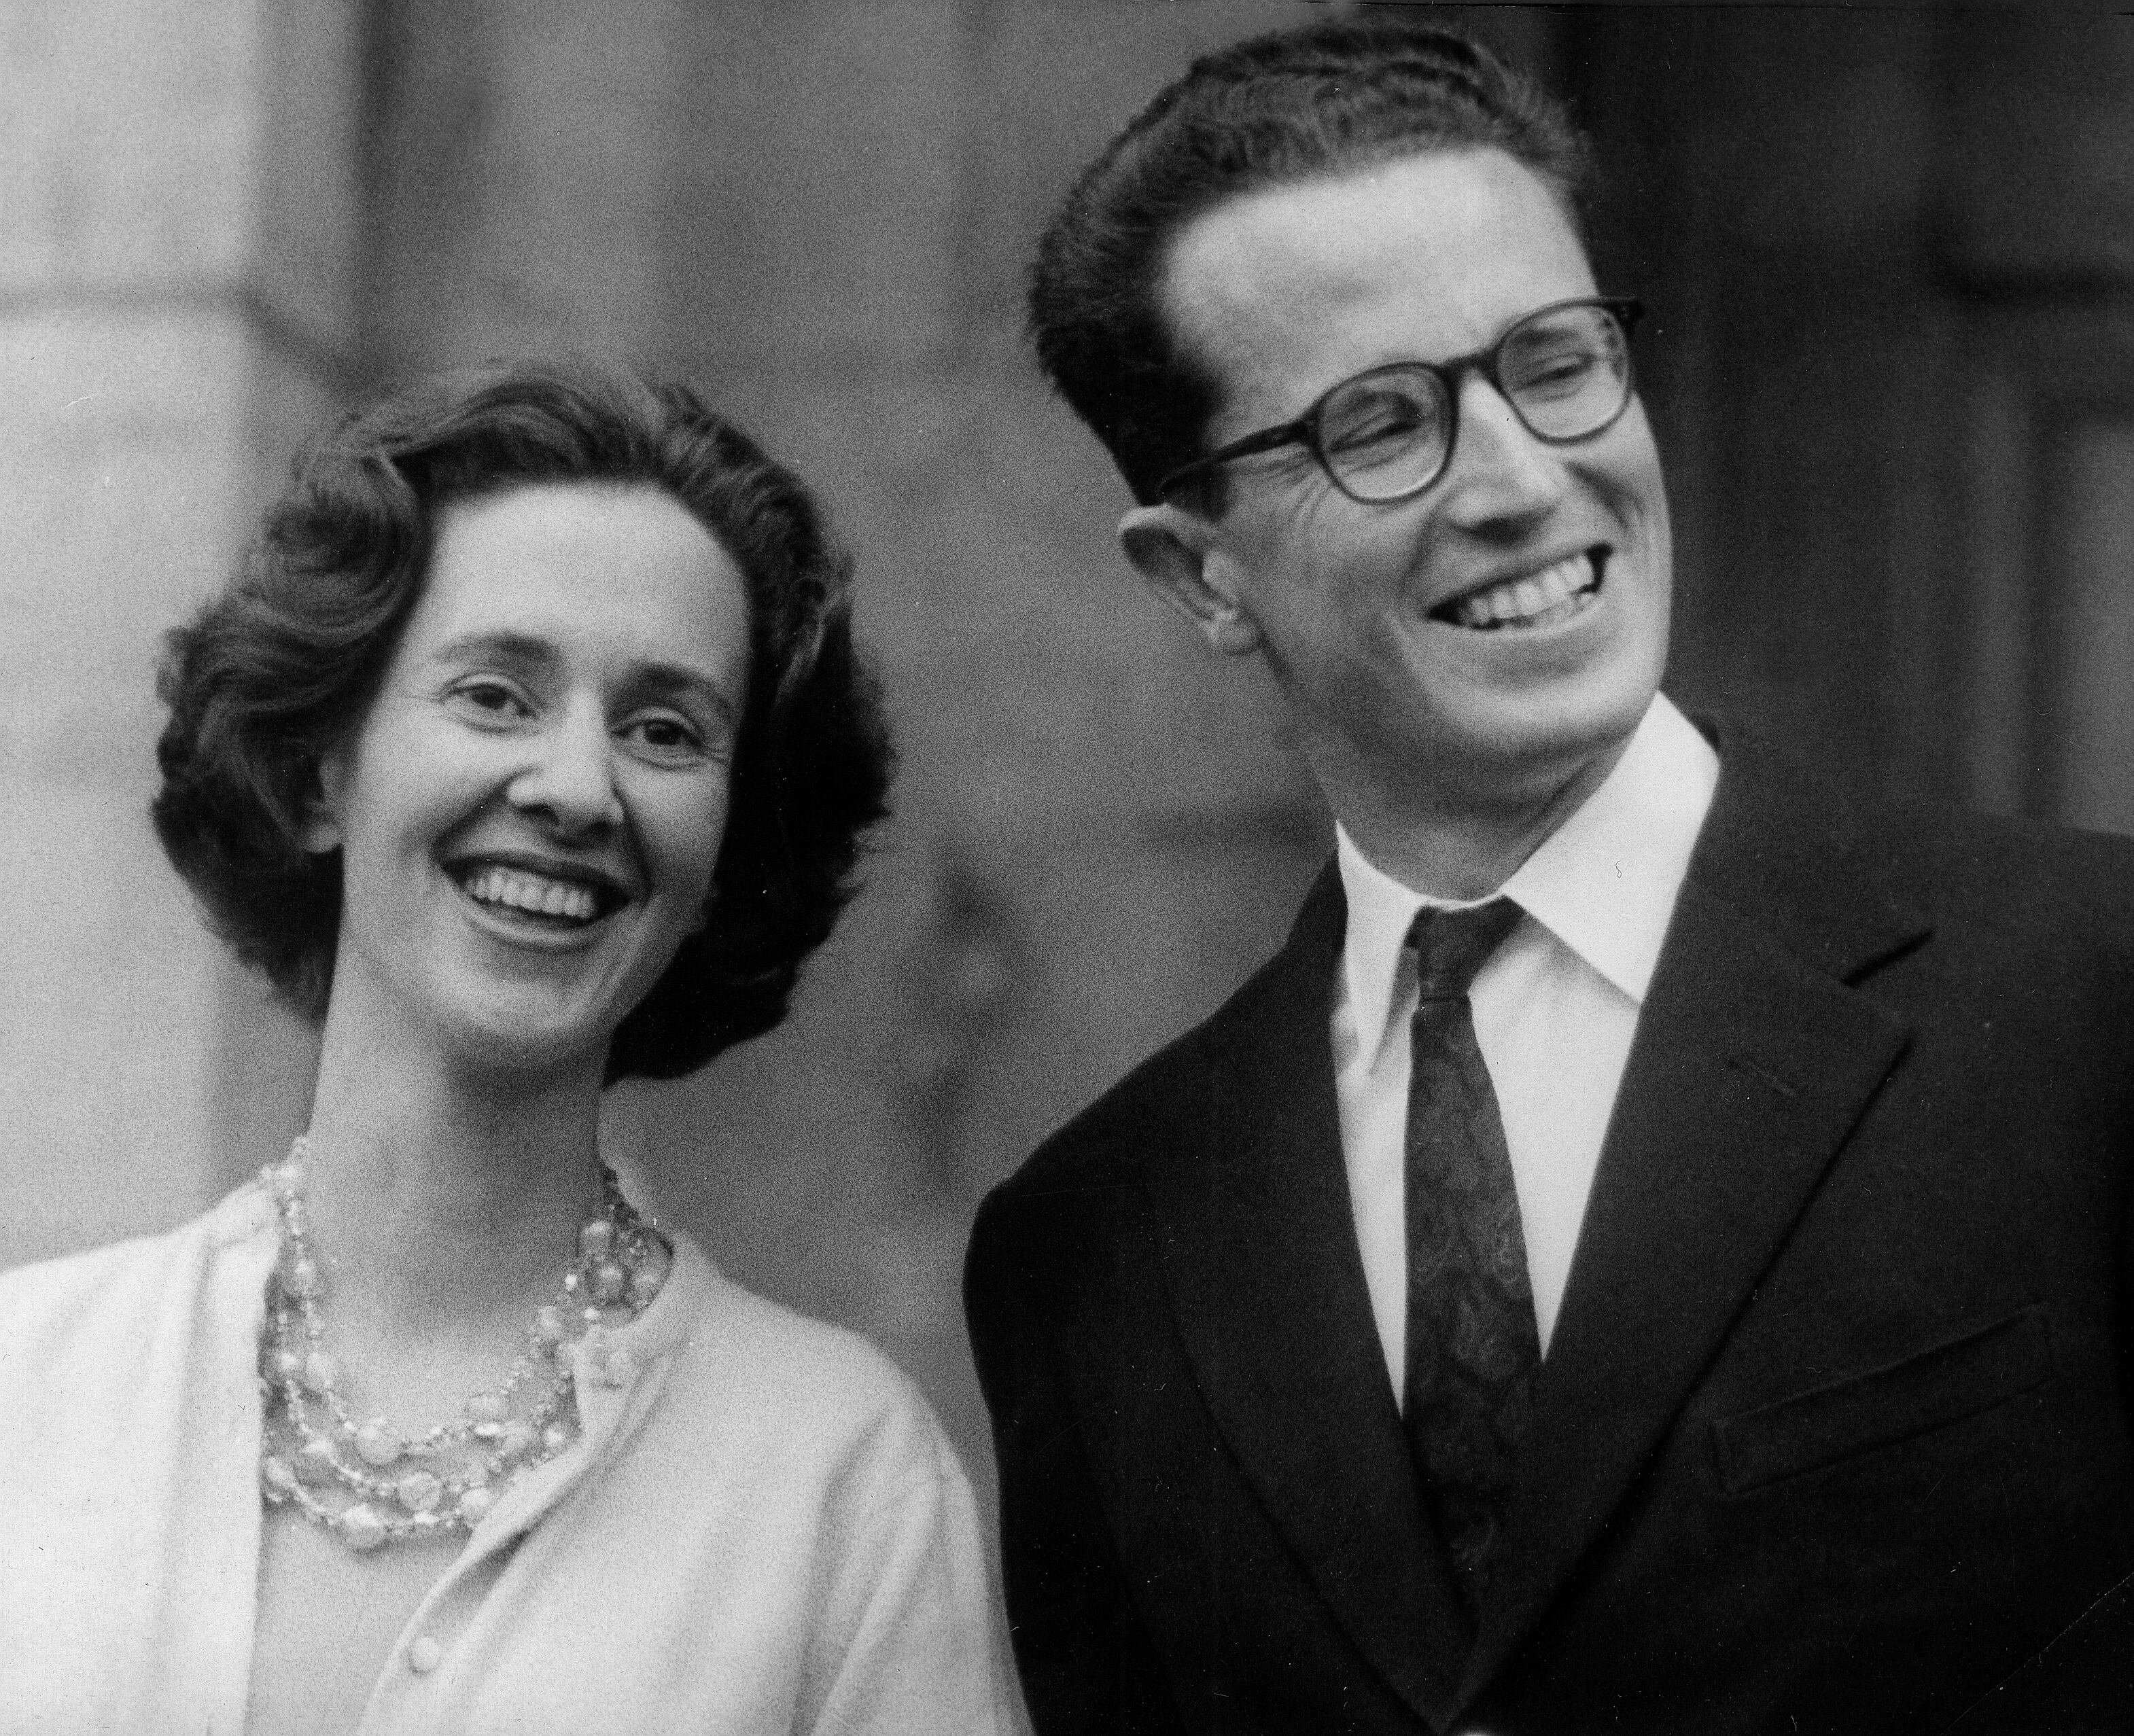 Imagen de archivo de 1960 del rey Balduino de Bélgica y su entonces prometida, Fabiola de Mora y Aragón, posando para la prensa mundial tras ser anunciado su compromiso matrimonial. EFE//ct 